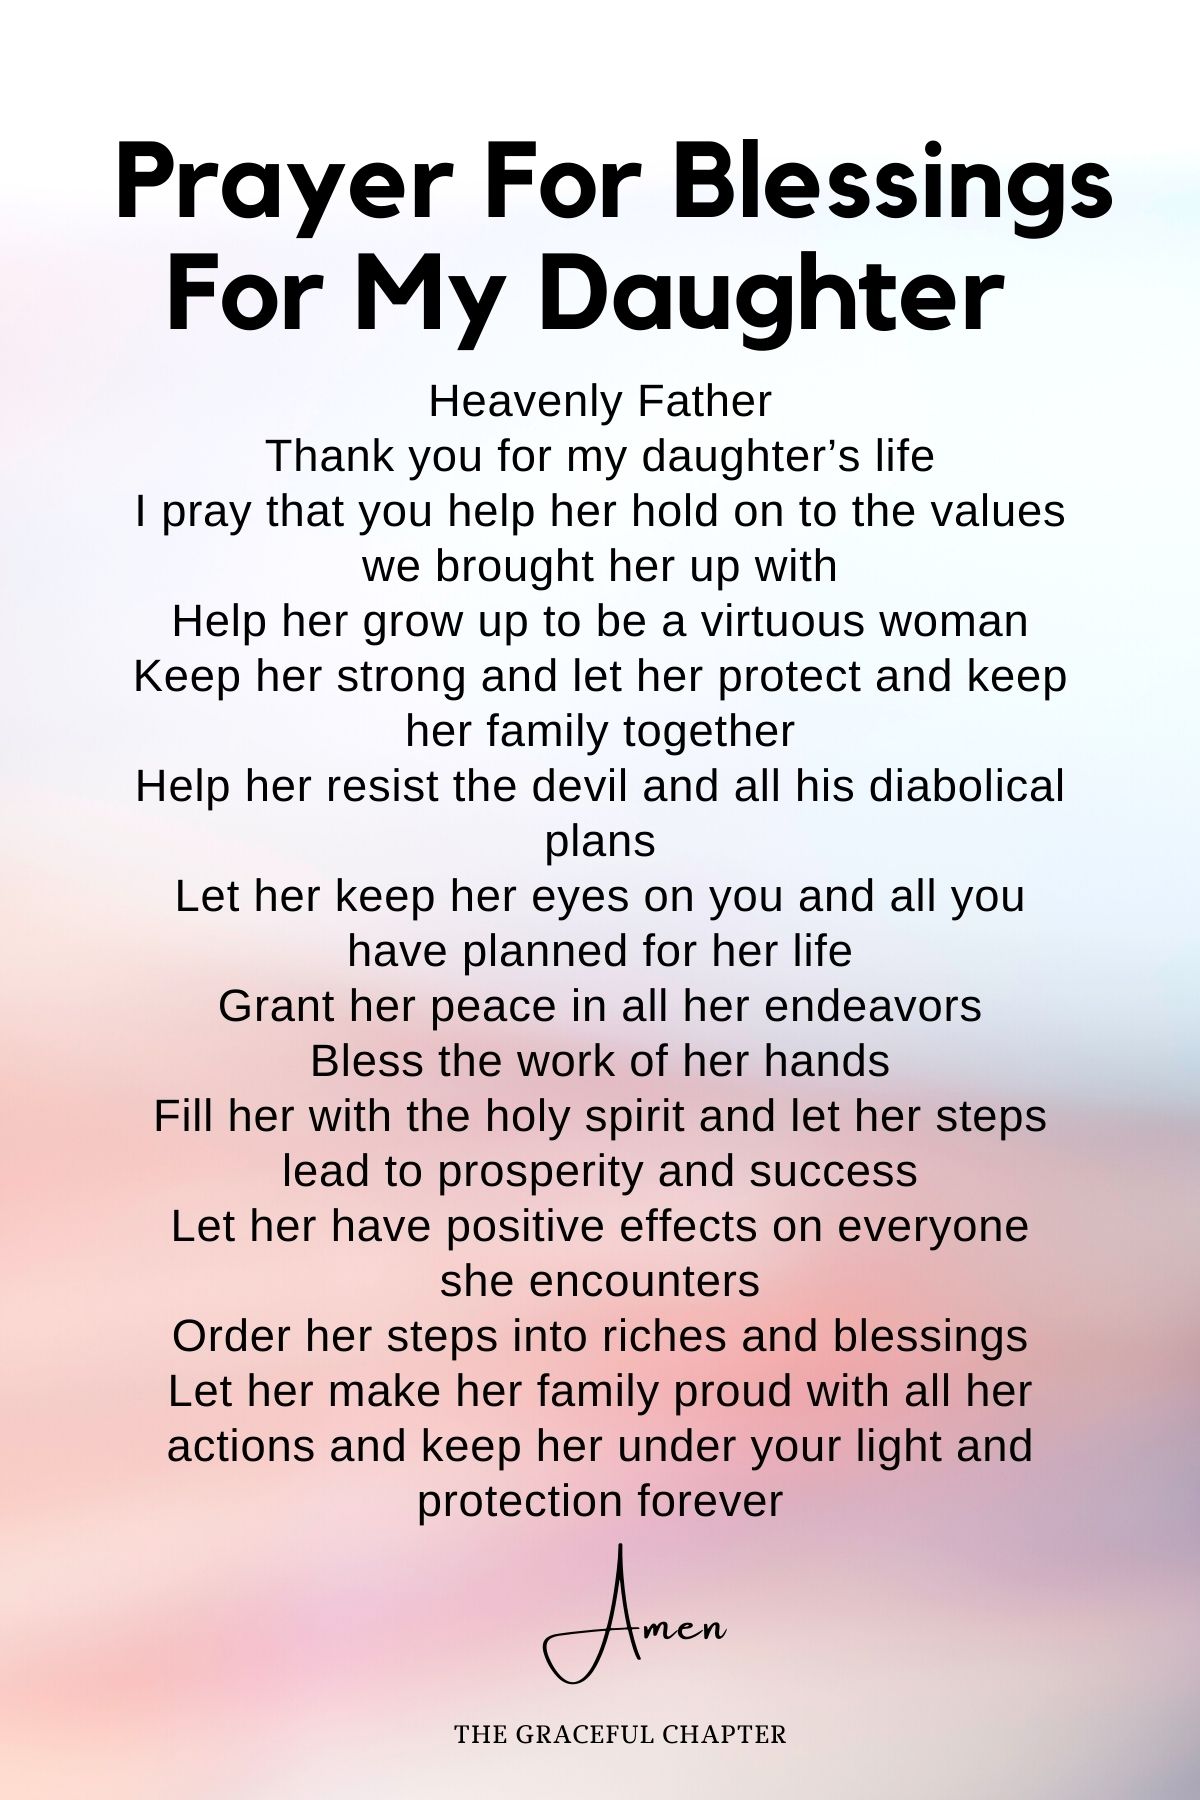  Prayer for blessings for my daughter 